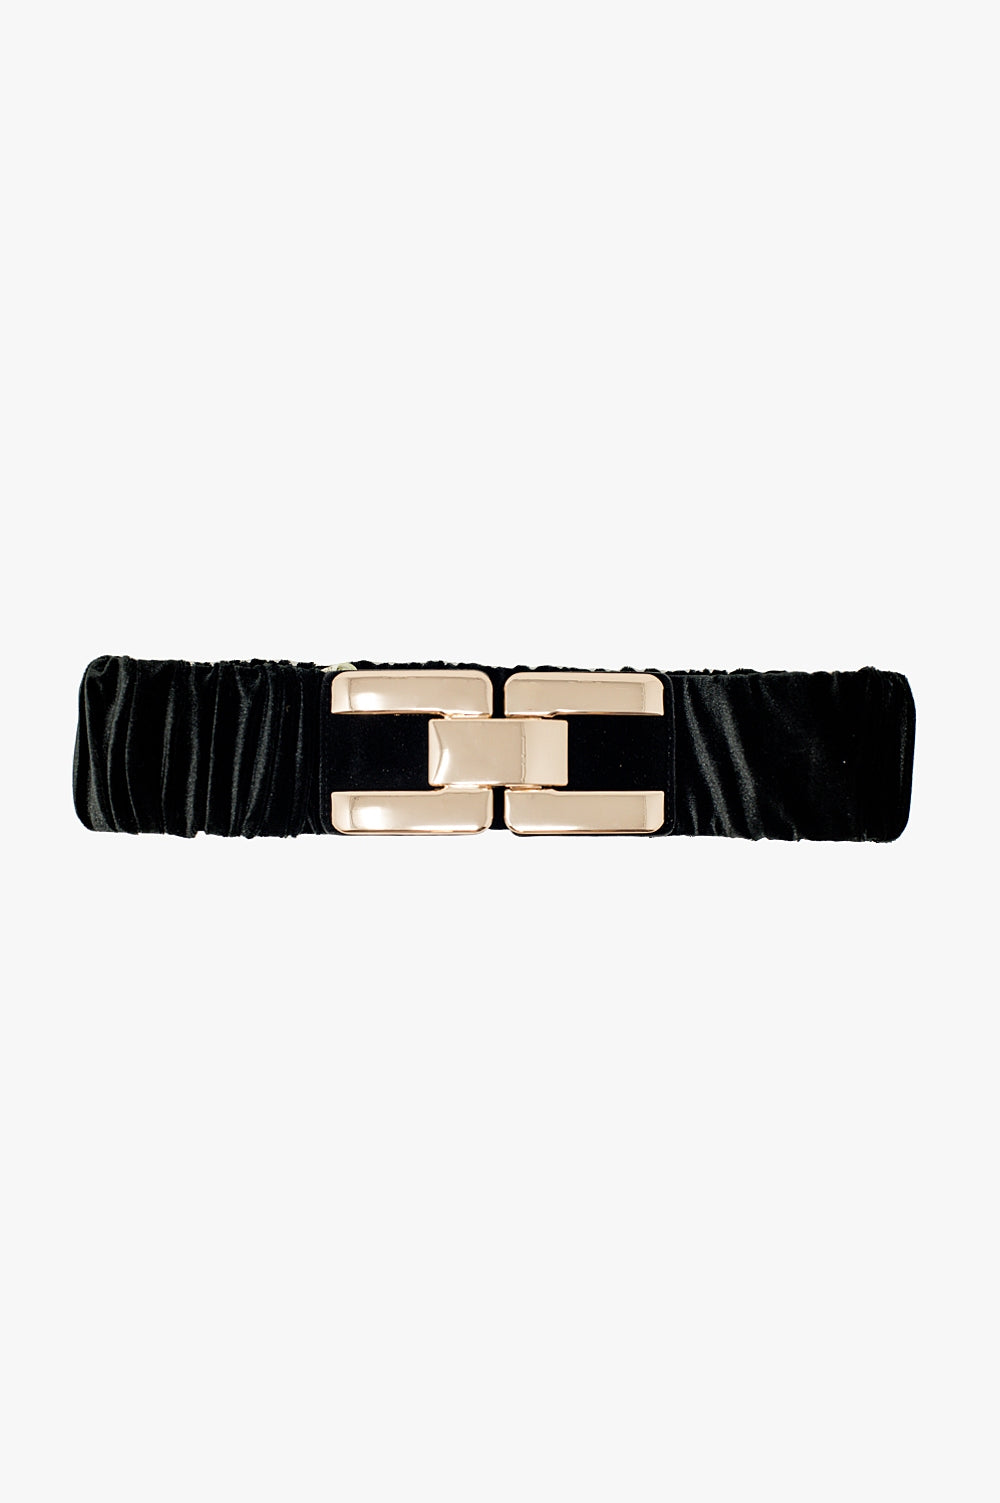 Q2 Black elastic velvet belt with metal closure